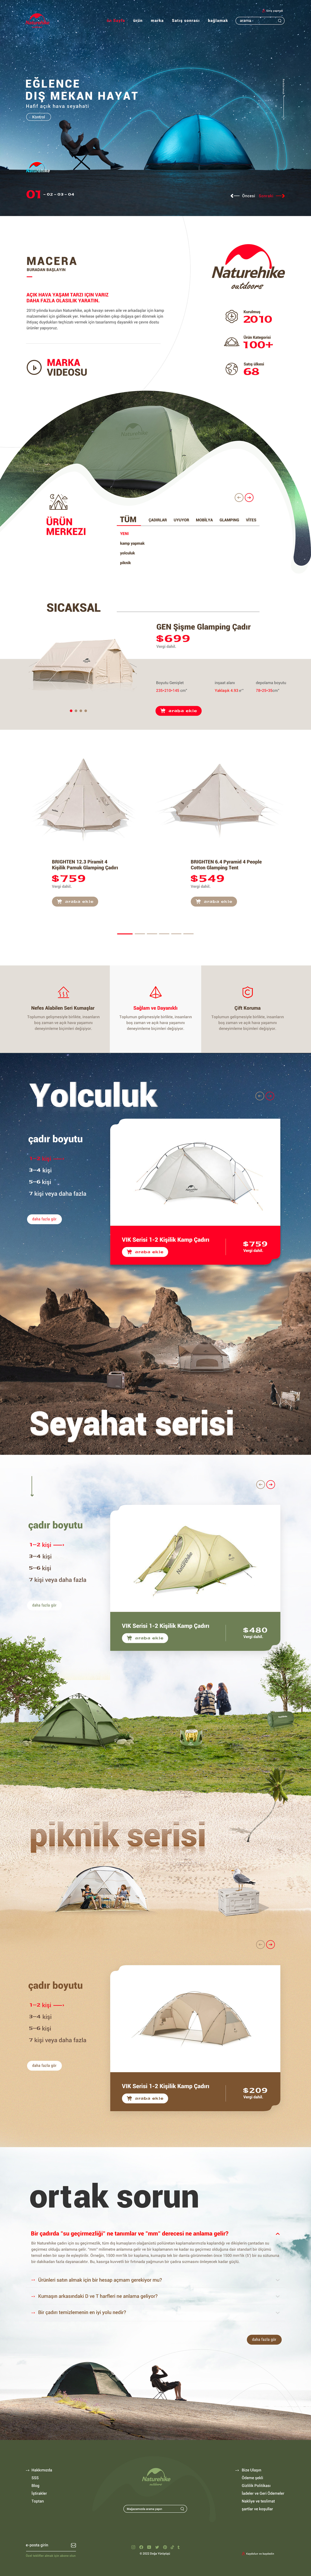 户外用品旅游露营帐篷网站制作案例